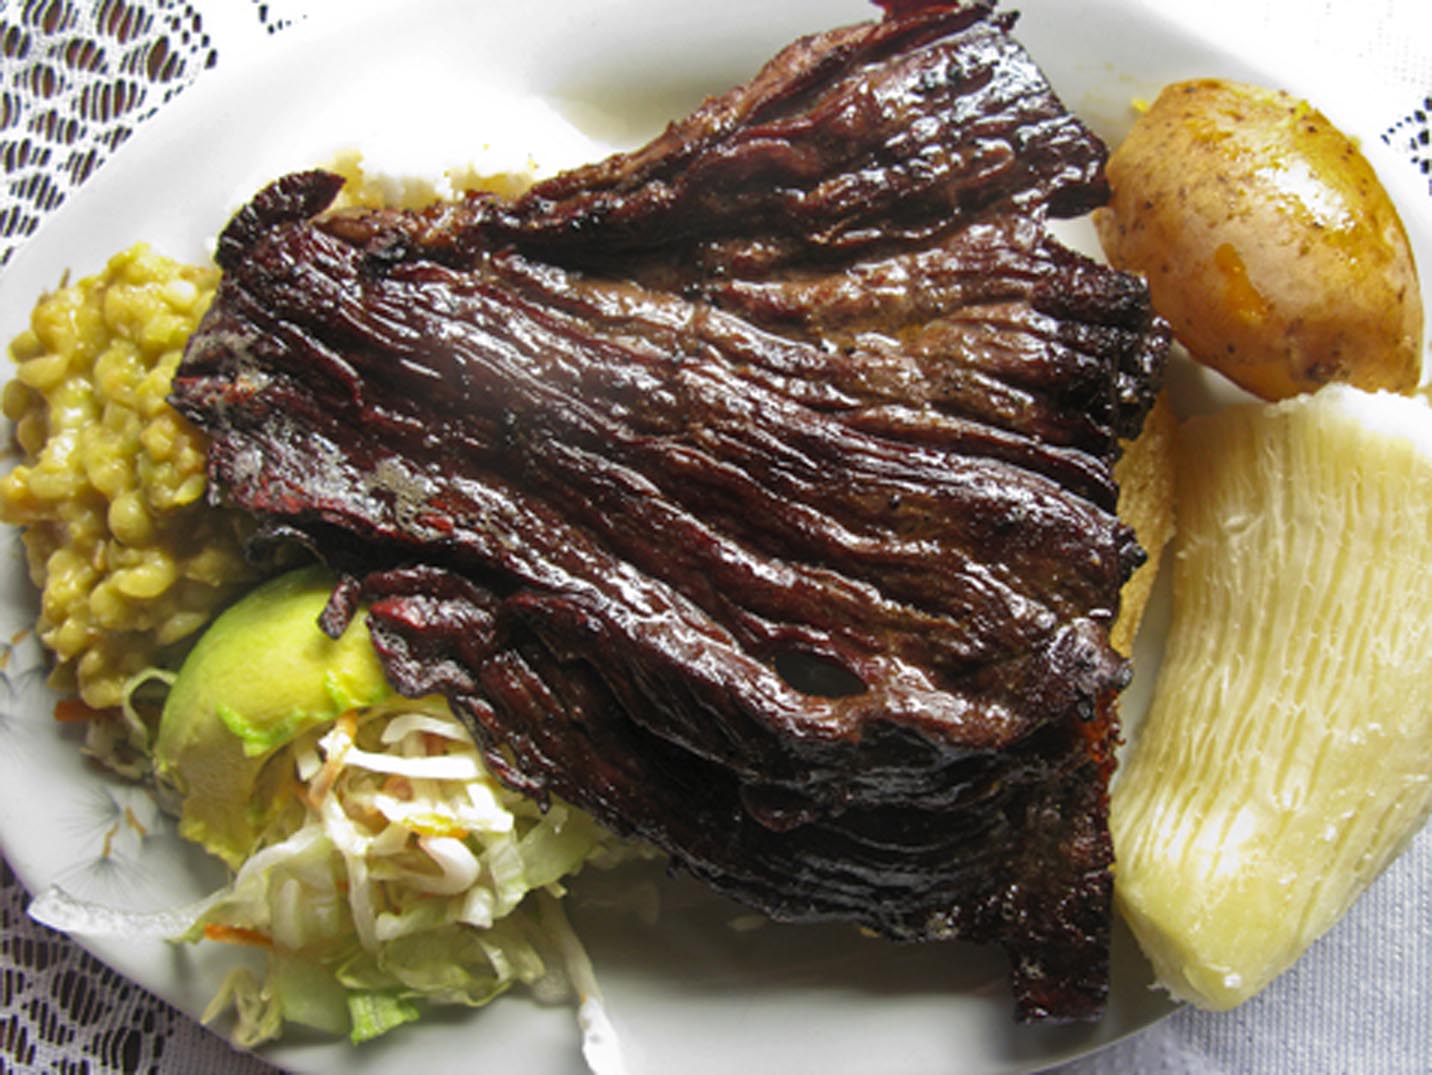 A plate of carne oreada from Restaurante La Brasa Misifu in Barichara, Colombia.